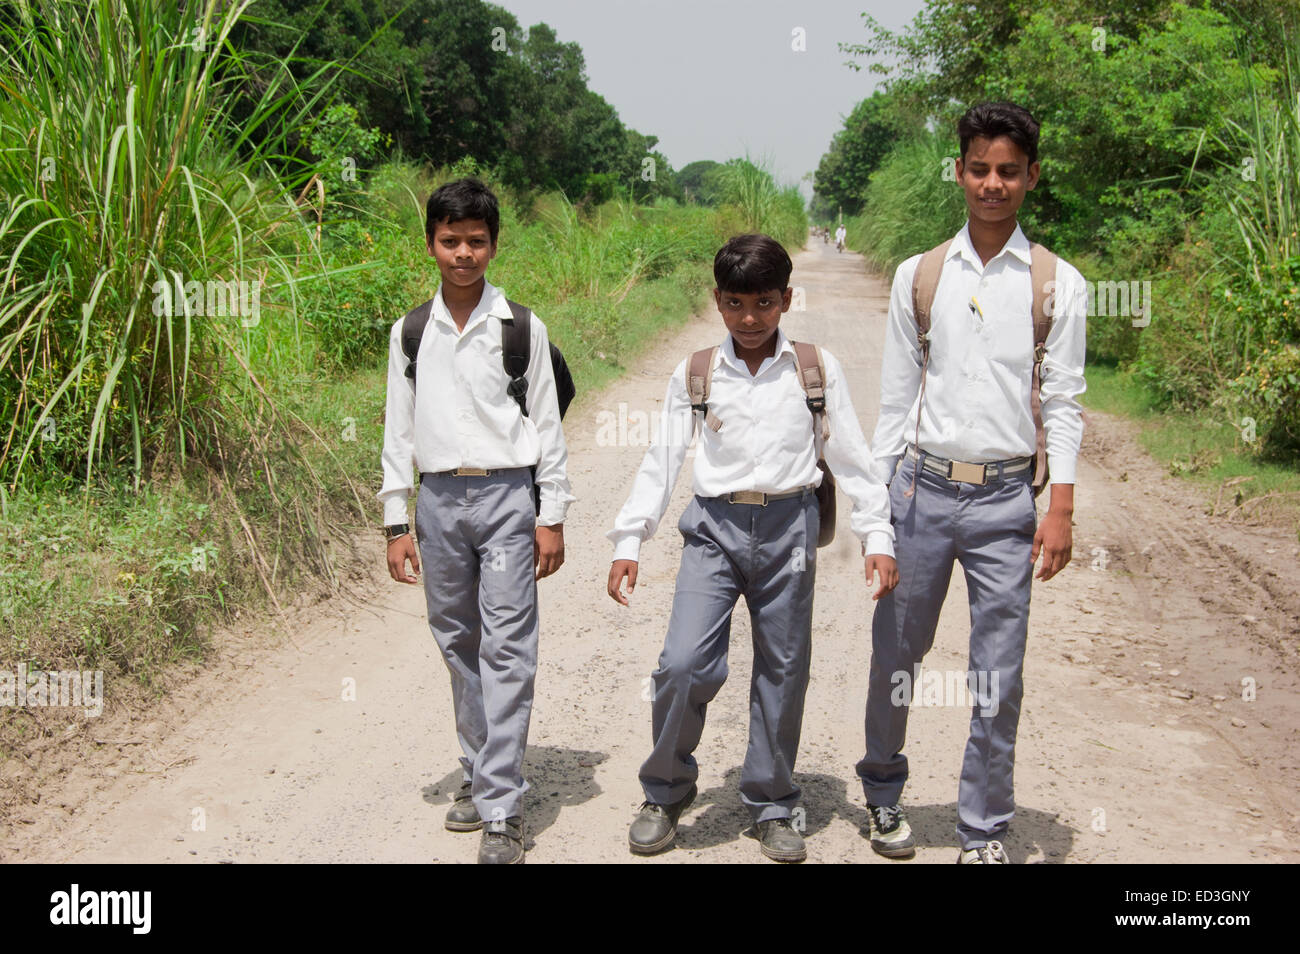 3 indian rural children School Students standing road Stock Photo